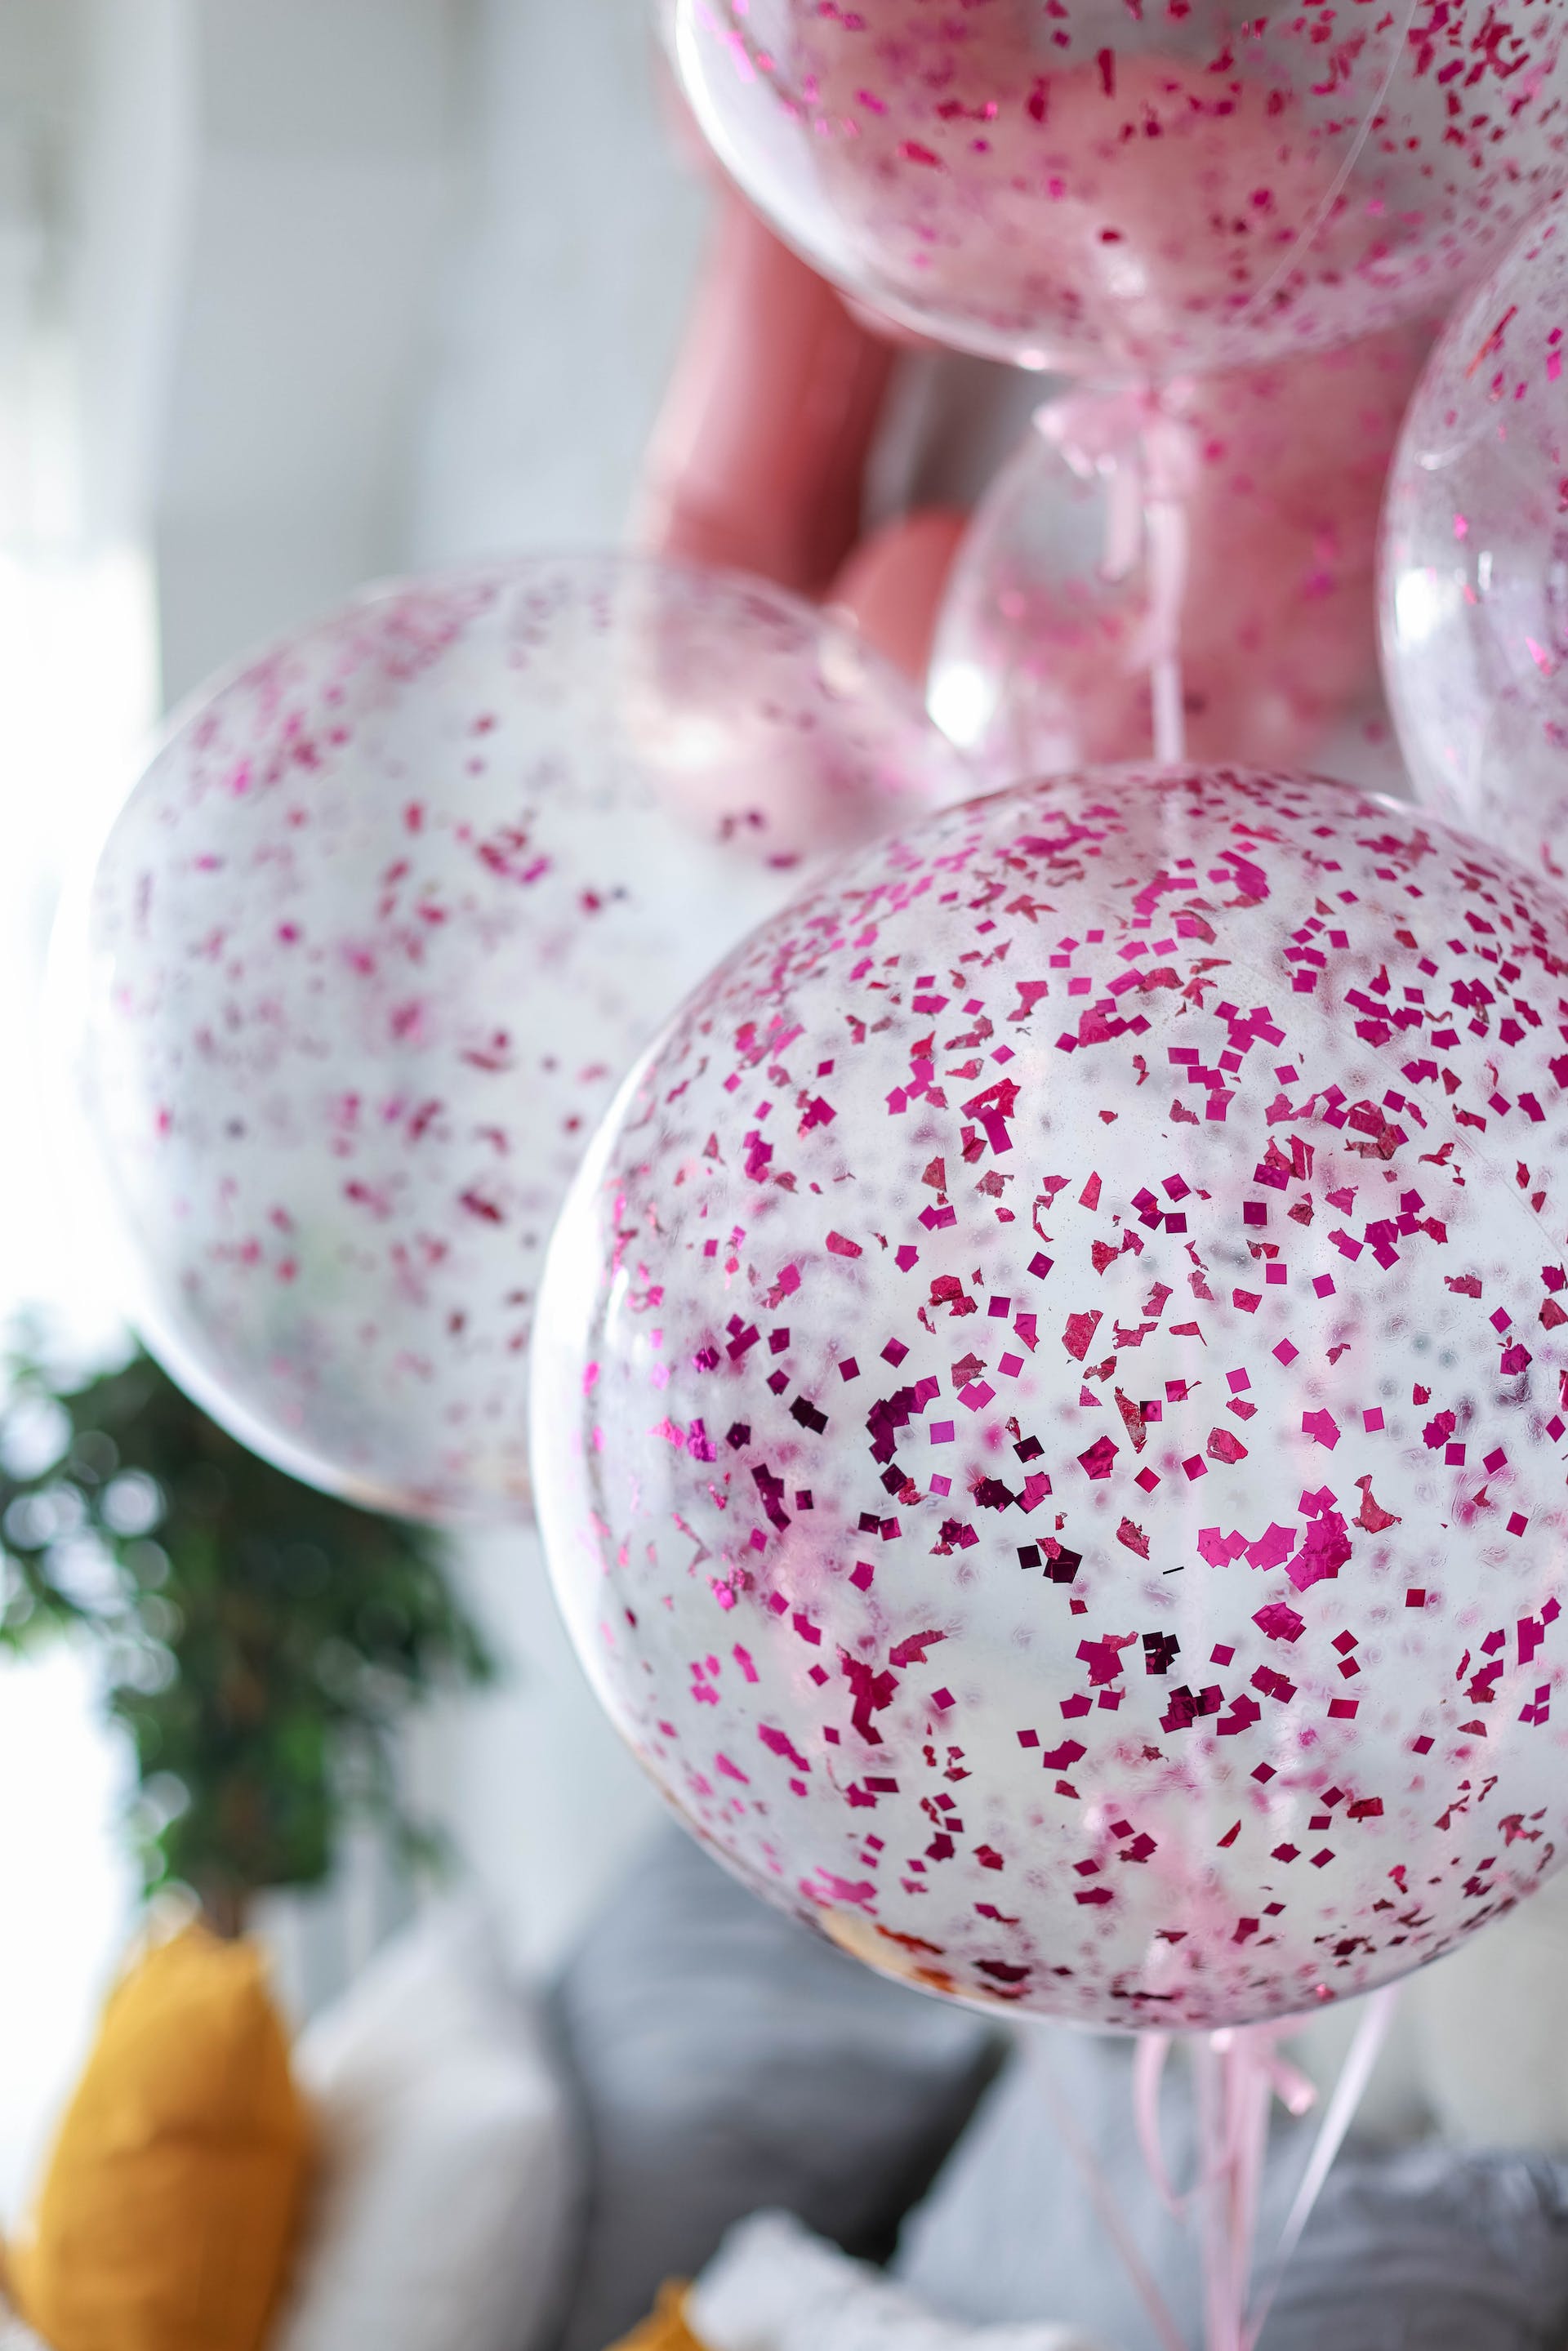 Des ballons avec des confettis roses. | Source : Pexels